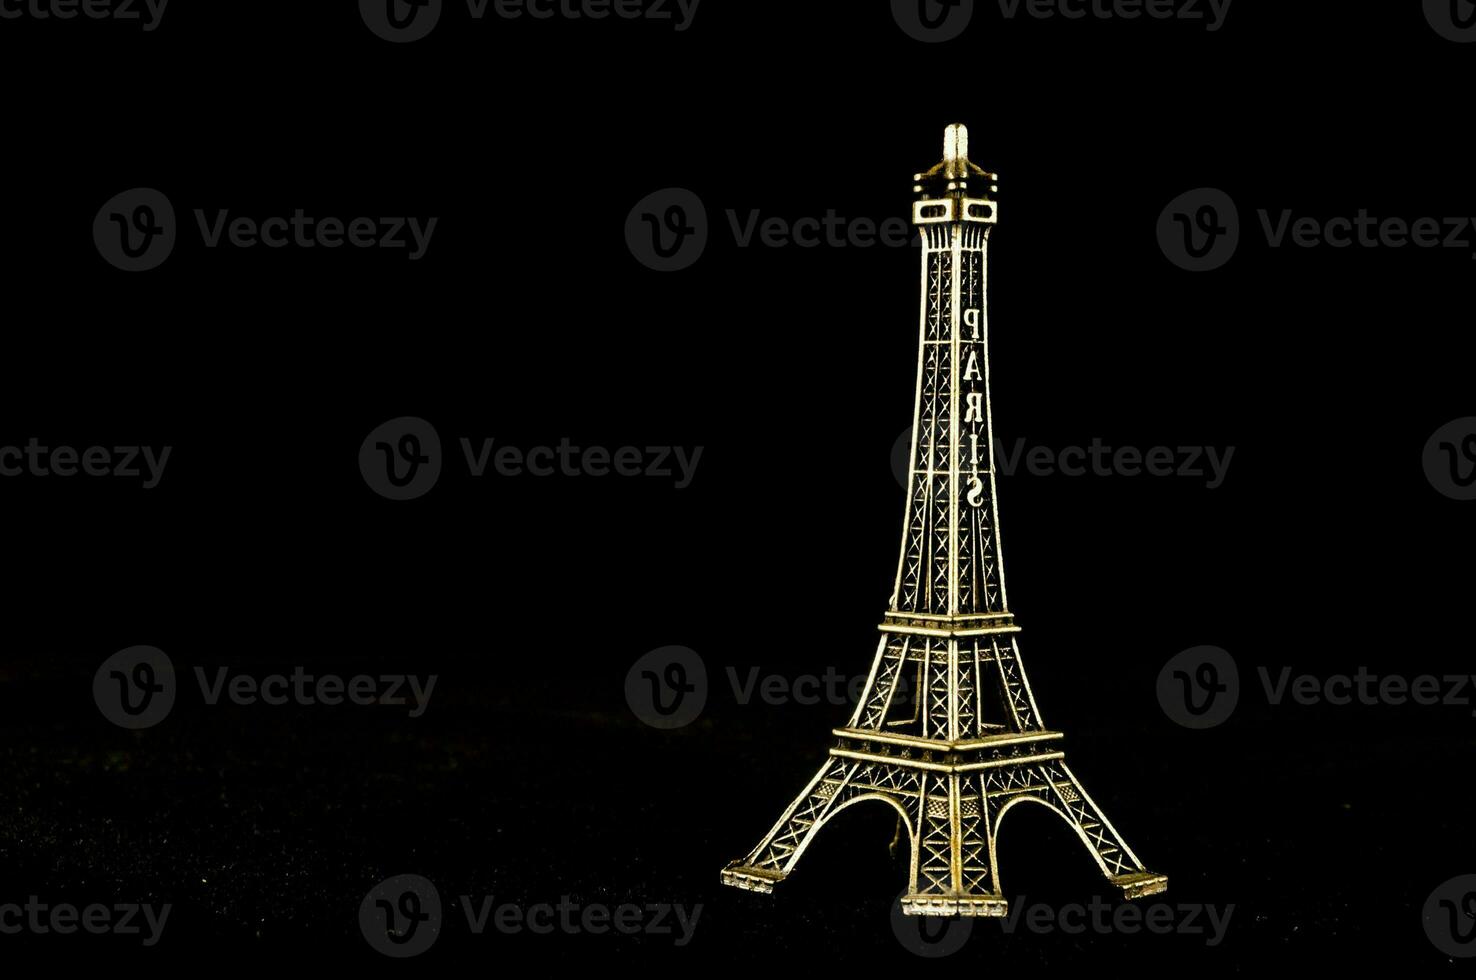 ein Gold Eiffel Turm auf ein schwarz Hintergrund foto